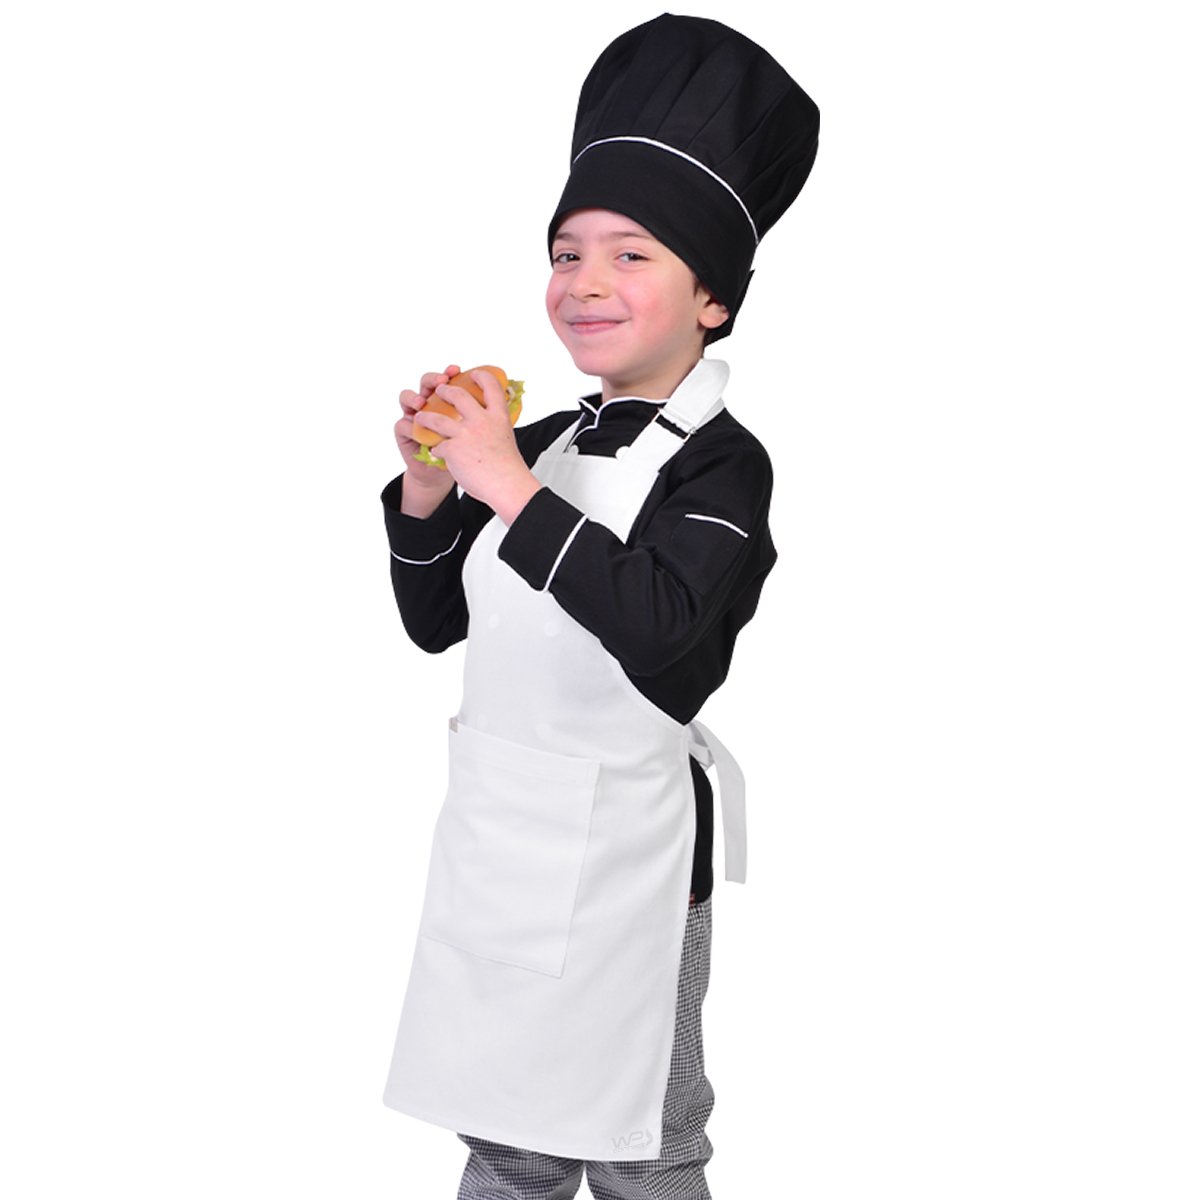 Avental Infantil Chef de Cozinha Corpo Inteiro de 04 a 08 anos - Wp Connect - Branco - Único - 5